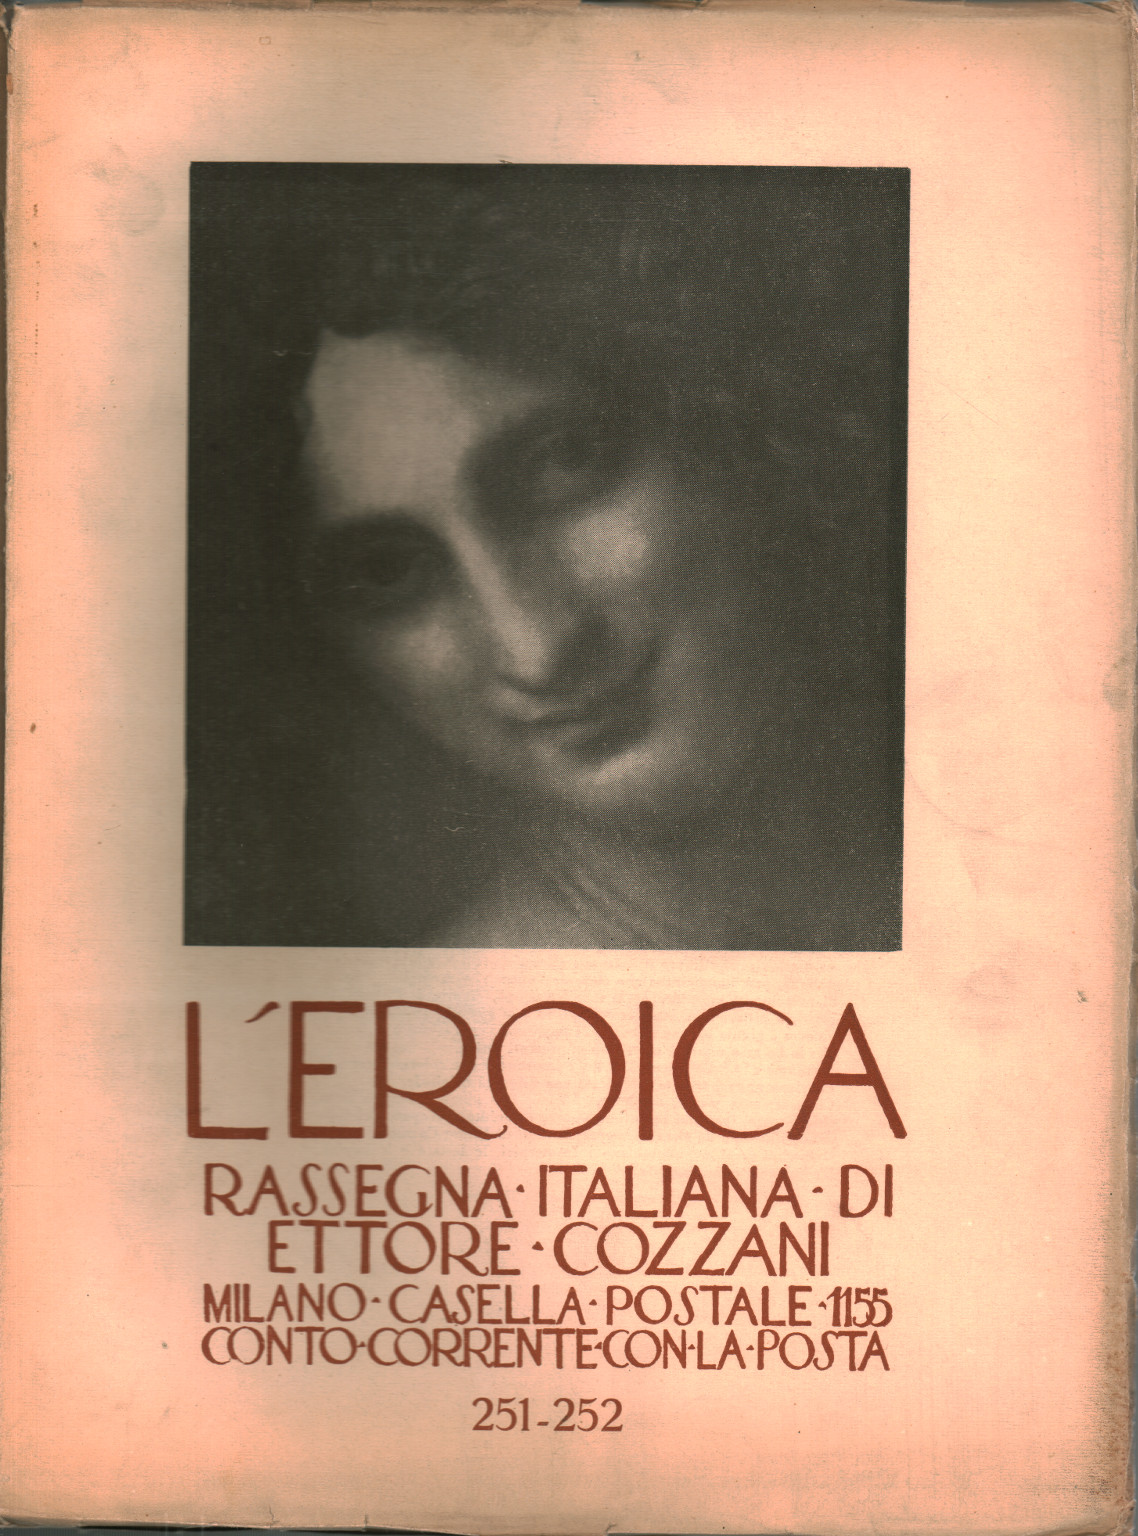 The heroic. Rassegna italiana di Ettore Cozzani. Ann, s.a.